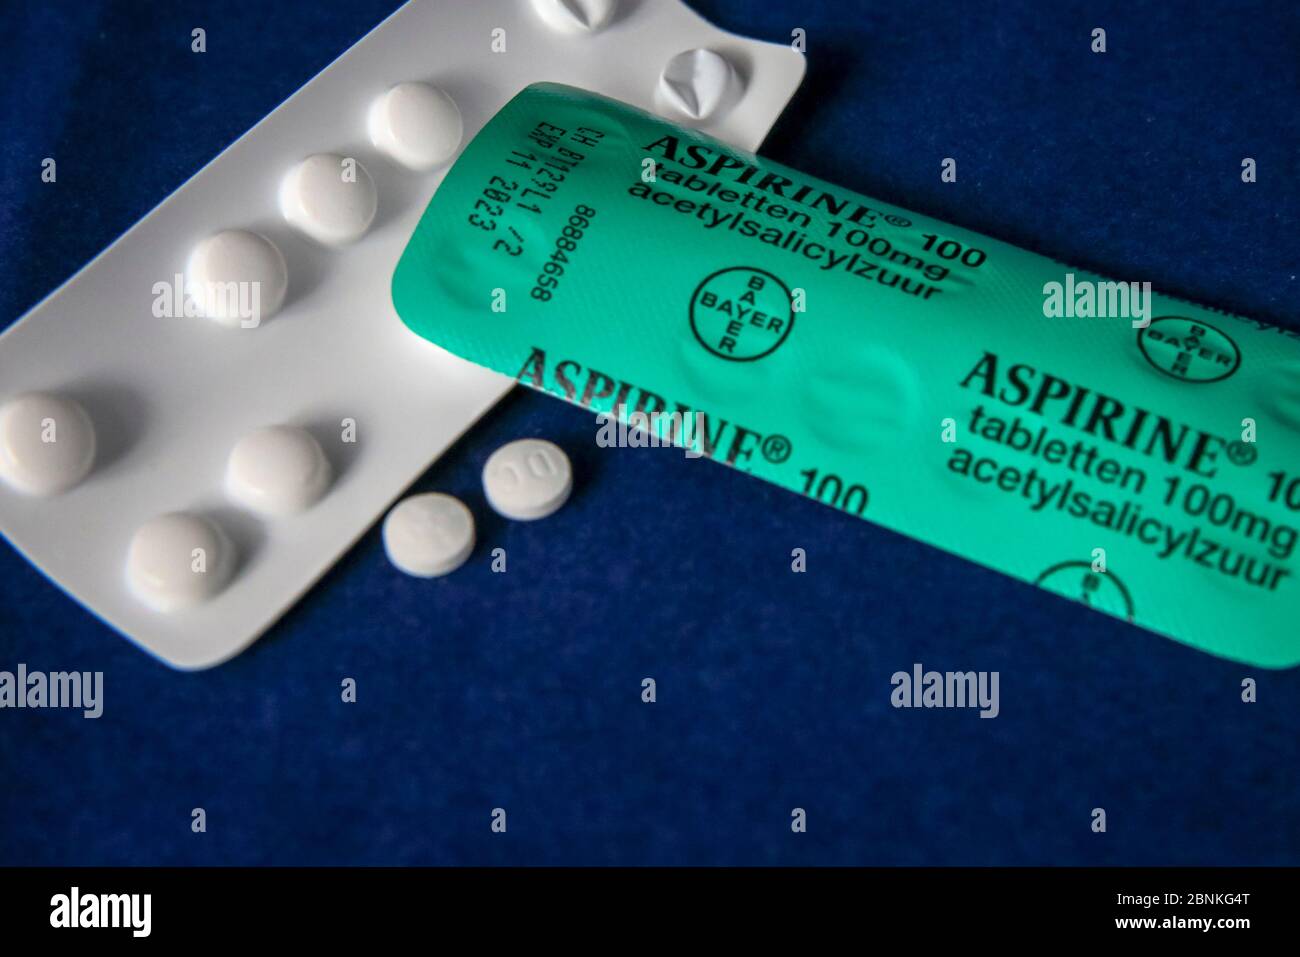 NIEUWEGEIN, 15-05-2020 , Dutchnews, Aspirin comprimés l'acide acétylsalicylique est un médicament qui a un effet analgésique, réducteur de fièvre et anti-inflammatoire. Le médicament était le analgésique le plus largement utilisé sous le nom de marque Aspirin, ou sans marque comme acide acétylsalicylique avant l'émergence du paracétamol Acetylsalicylzuur est een medicijn dat pijnstilend, koortsverlagend en ontstekingsremmend werkt. Het middel était l'un de merknaam aspirine, de merkloos als acetylsalicylzuur voor de opkomst van paracétamol de meest gebruikte pijnstiller Banque D'Images